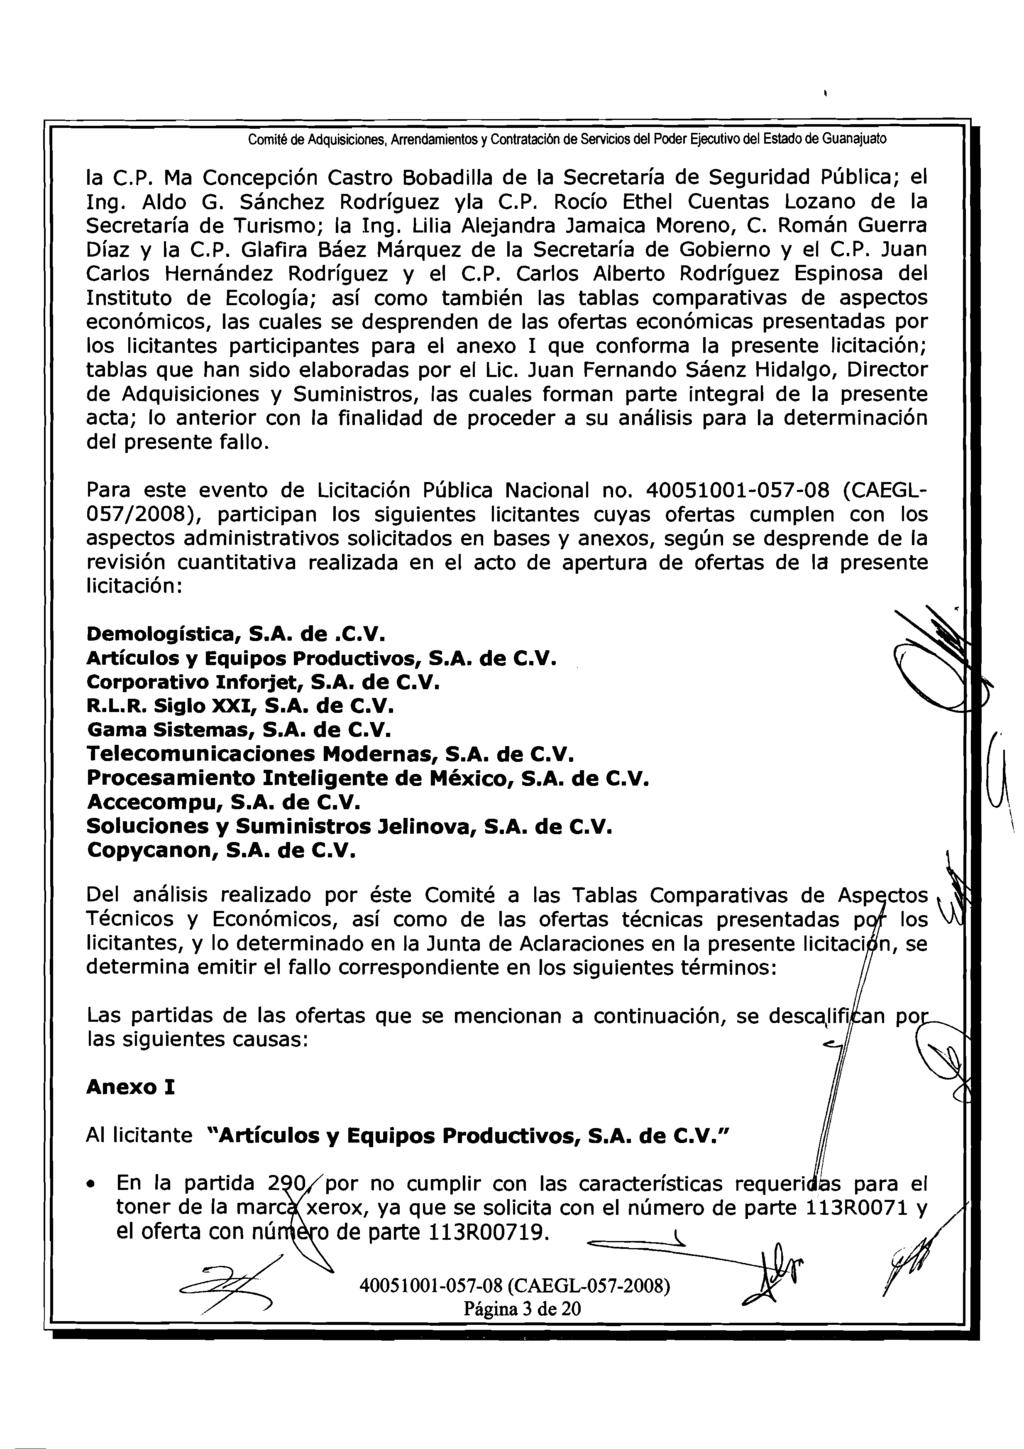 Comite de Adquisiciones, Arrendamientos y Contrataci6n de Servicios del Poder Ejecutivo del Estado de Guanajuato la C.P. Ma Concepci6n Castro Bobadilla de la Secretaria de Seguridad Pljblica; el ng.